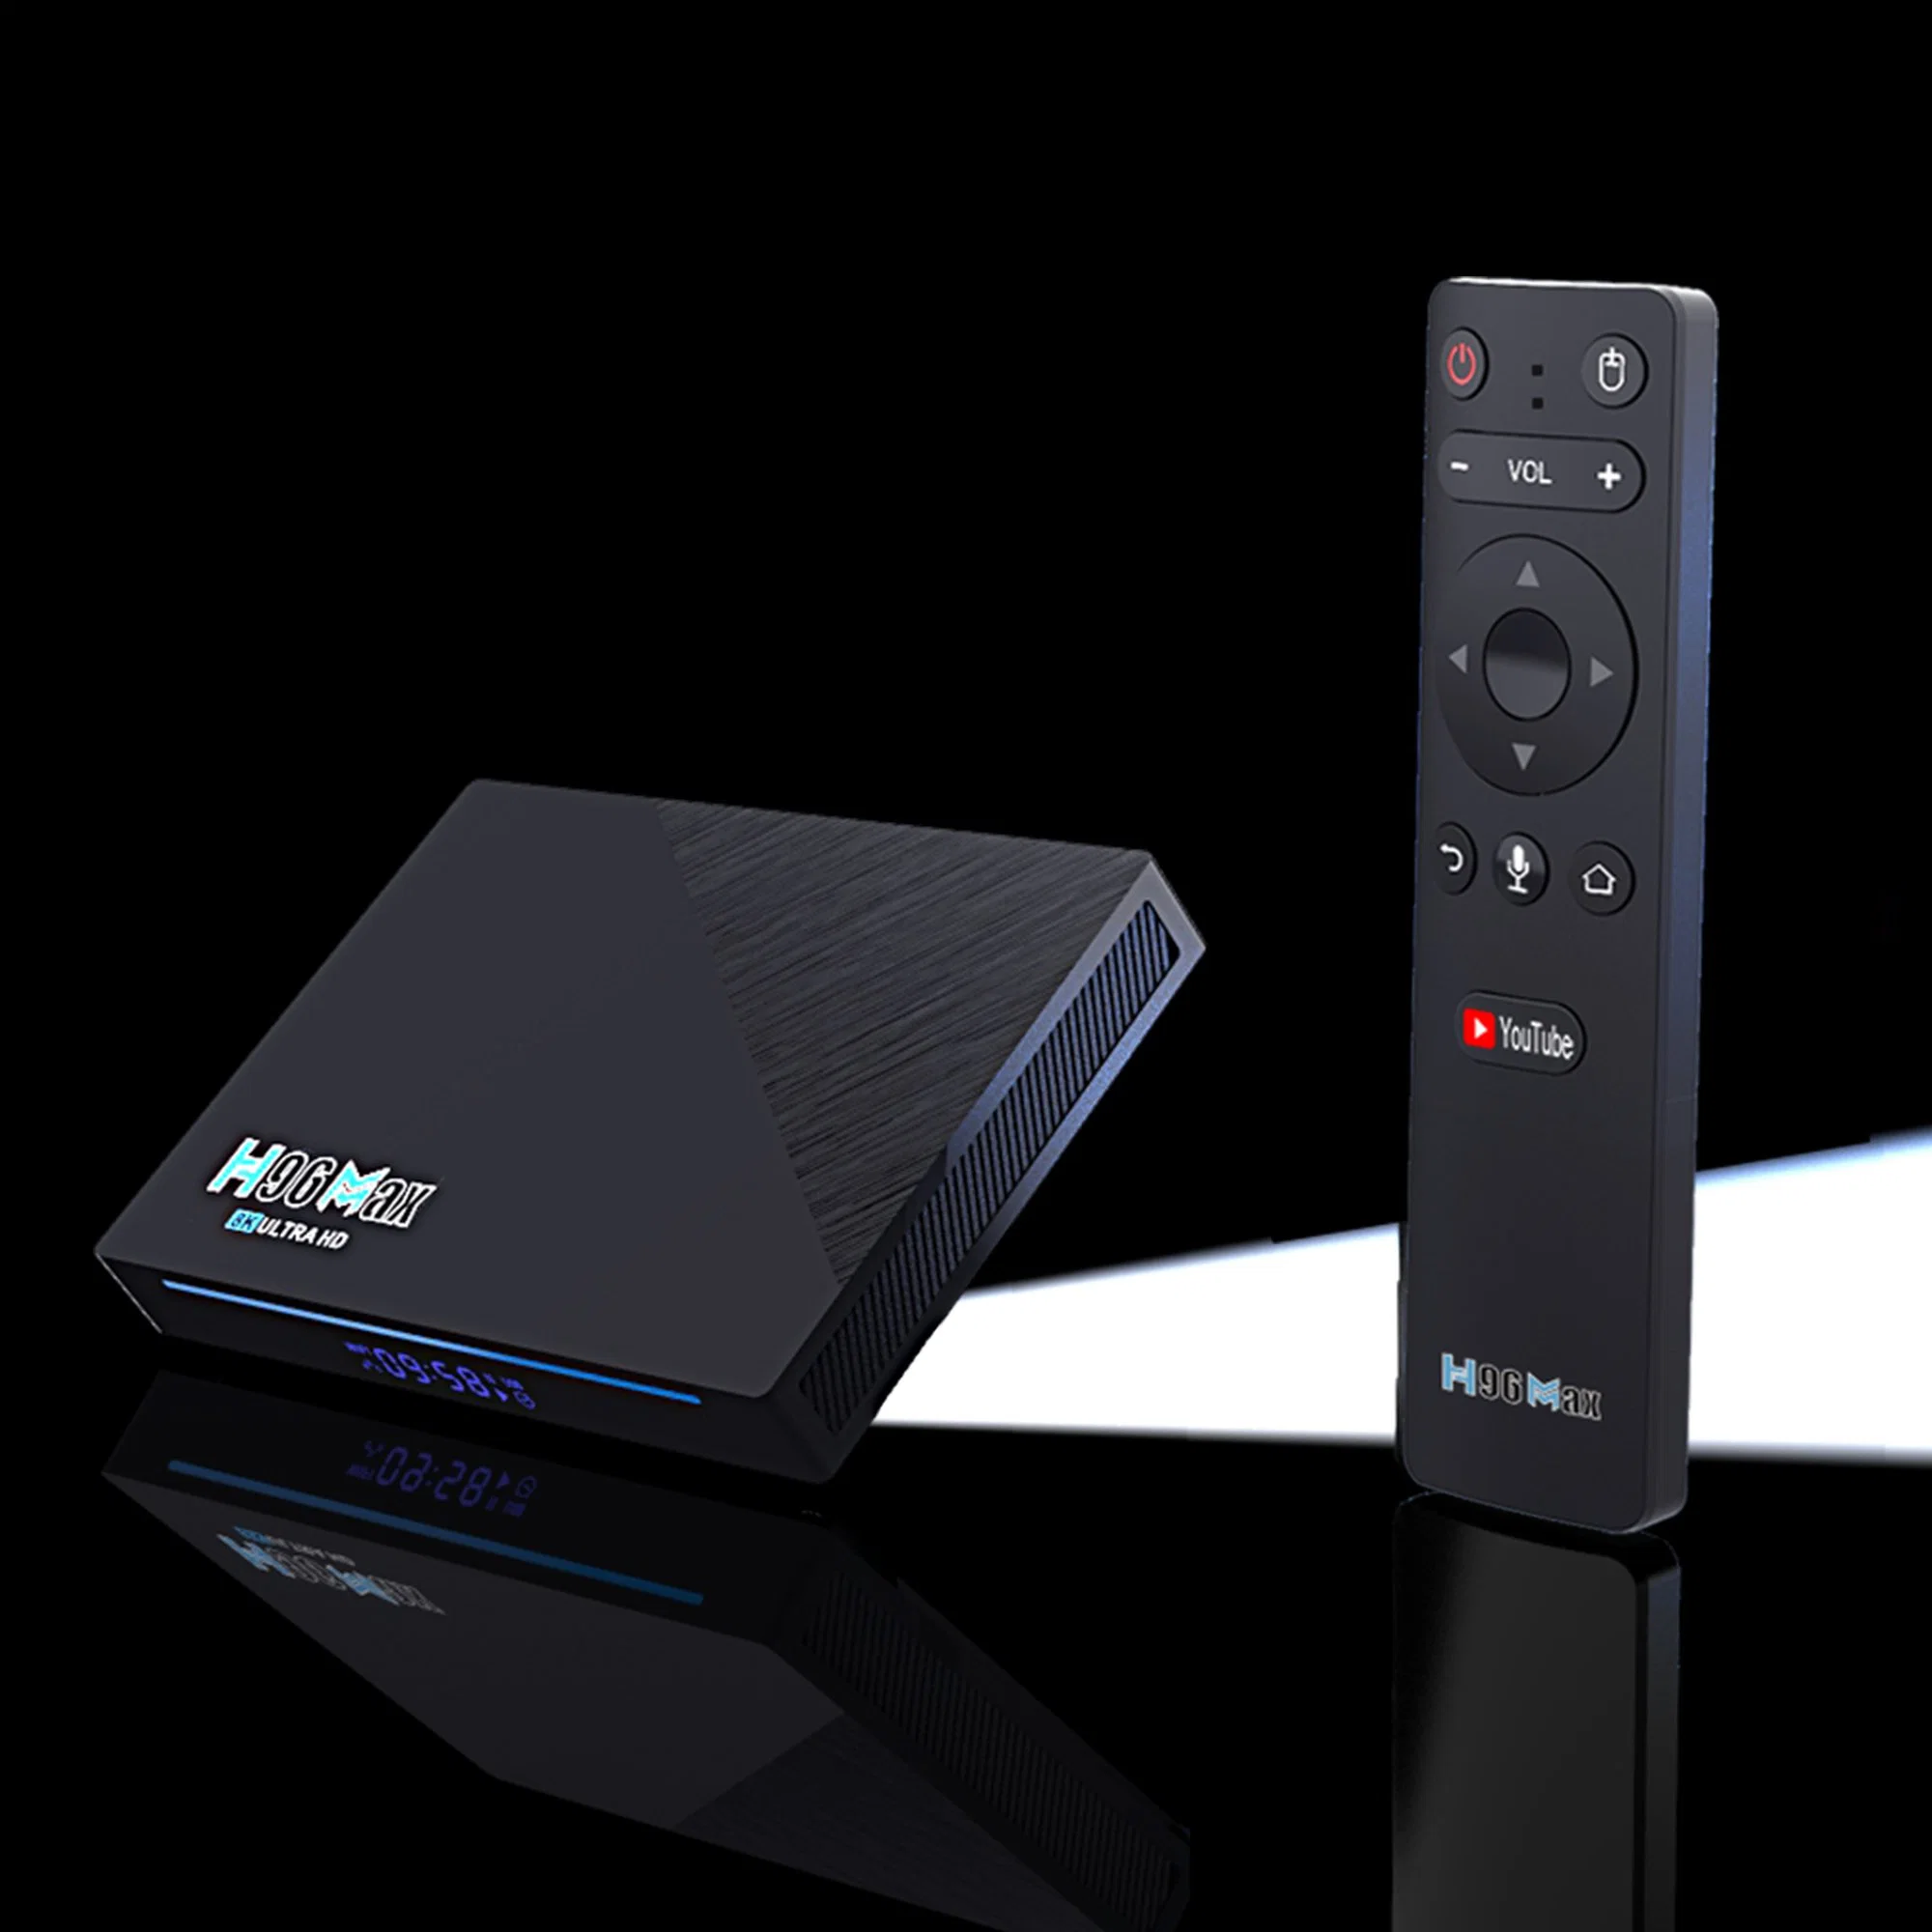 2022 الاشتراك الجديد في خدمة IPTV H96 الحد الأقصى Rk3566 Android 11 ذاكرة وصول عشوائي بسعة 128 جم Rk3566 8K RK3566 8K، صندوق التلفزيون، BT التحكم الصوتي 5 جم مجموعة WiFi ثنائية 1000 م LAN 4K YouTube الصندوق العلوي